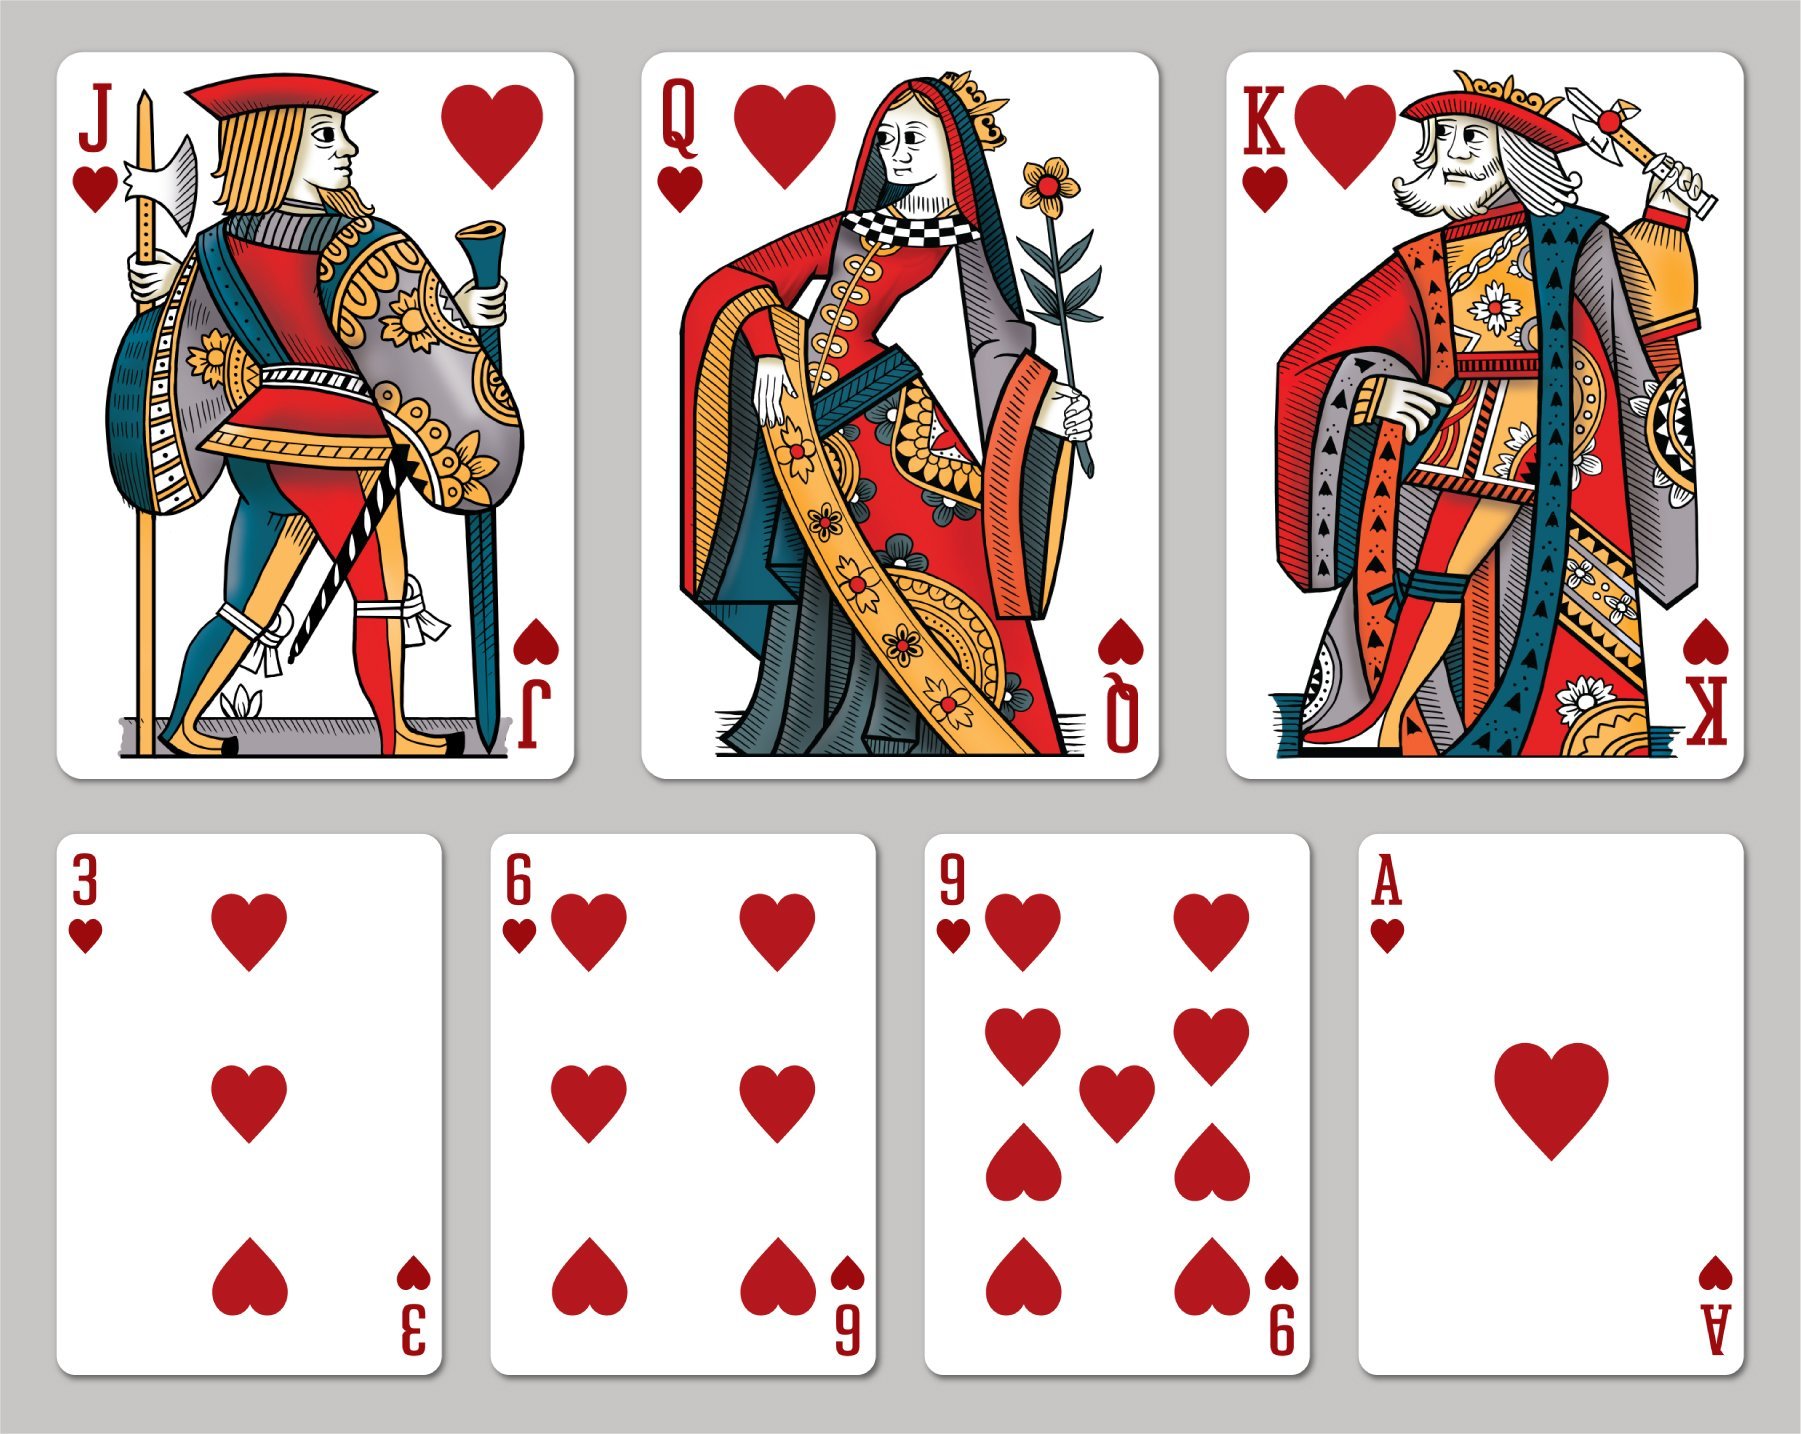 Как называются игральные карты. Дама валет Король туз черви. 2 Туз Король дама валет. Карта Король черви. Карты Геншин Импакт игральные карты.